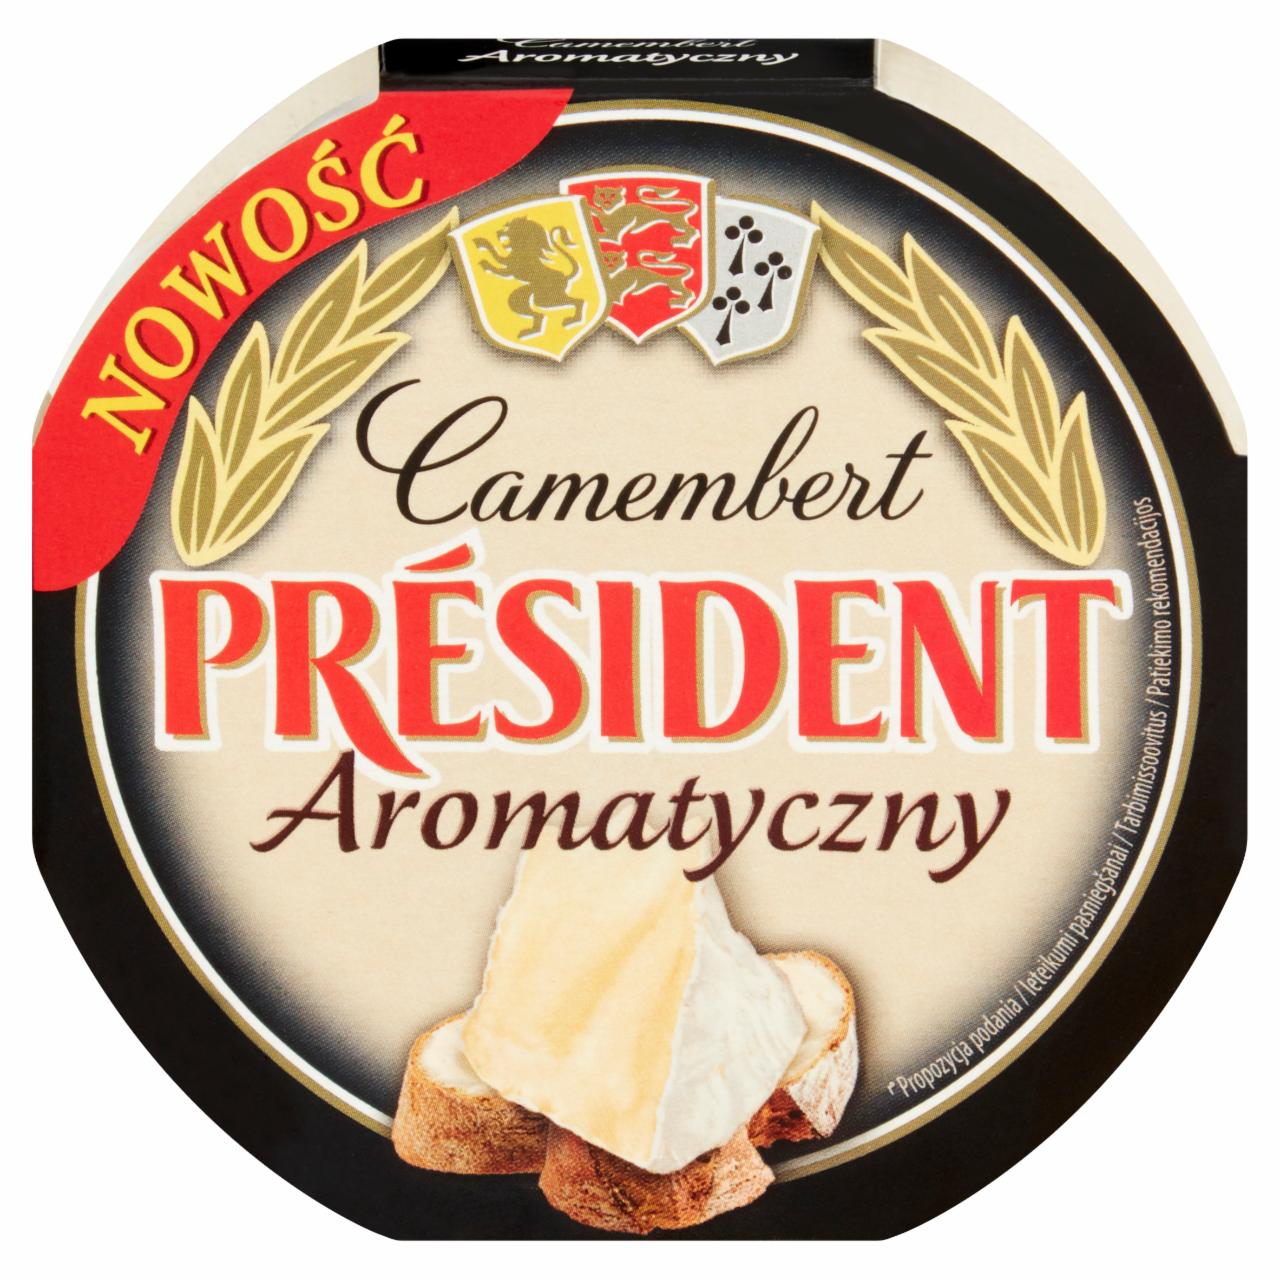 Zdjęcia - Président Ser Camembert aromatyczny